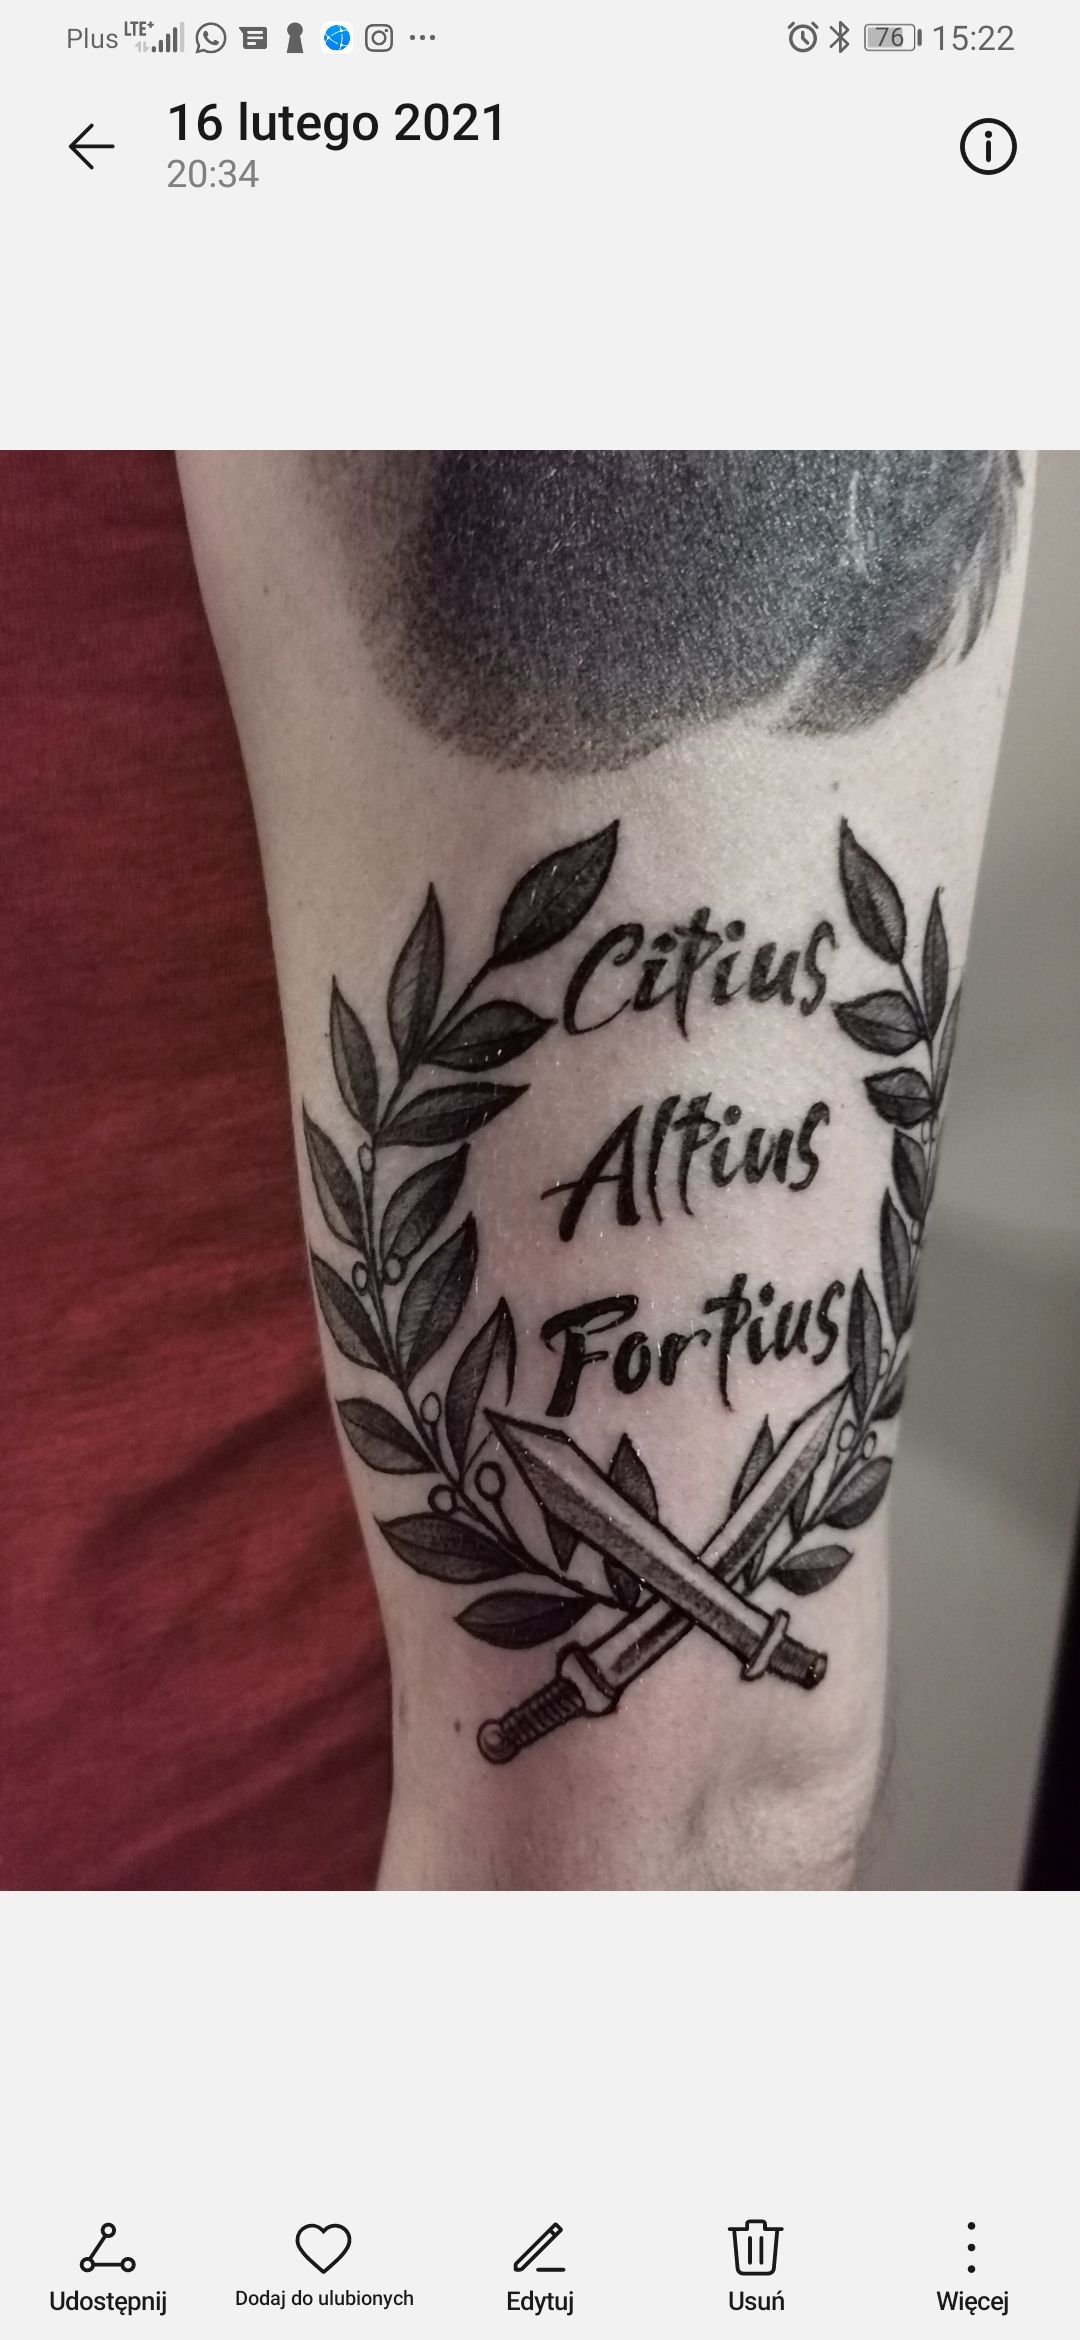 Schrift Tattoo Citius, altius, fortius